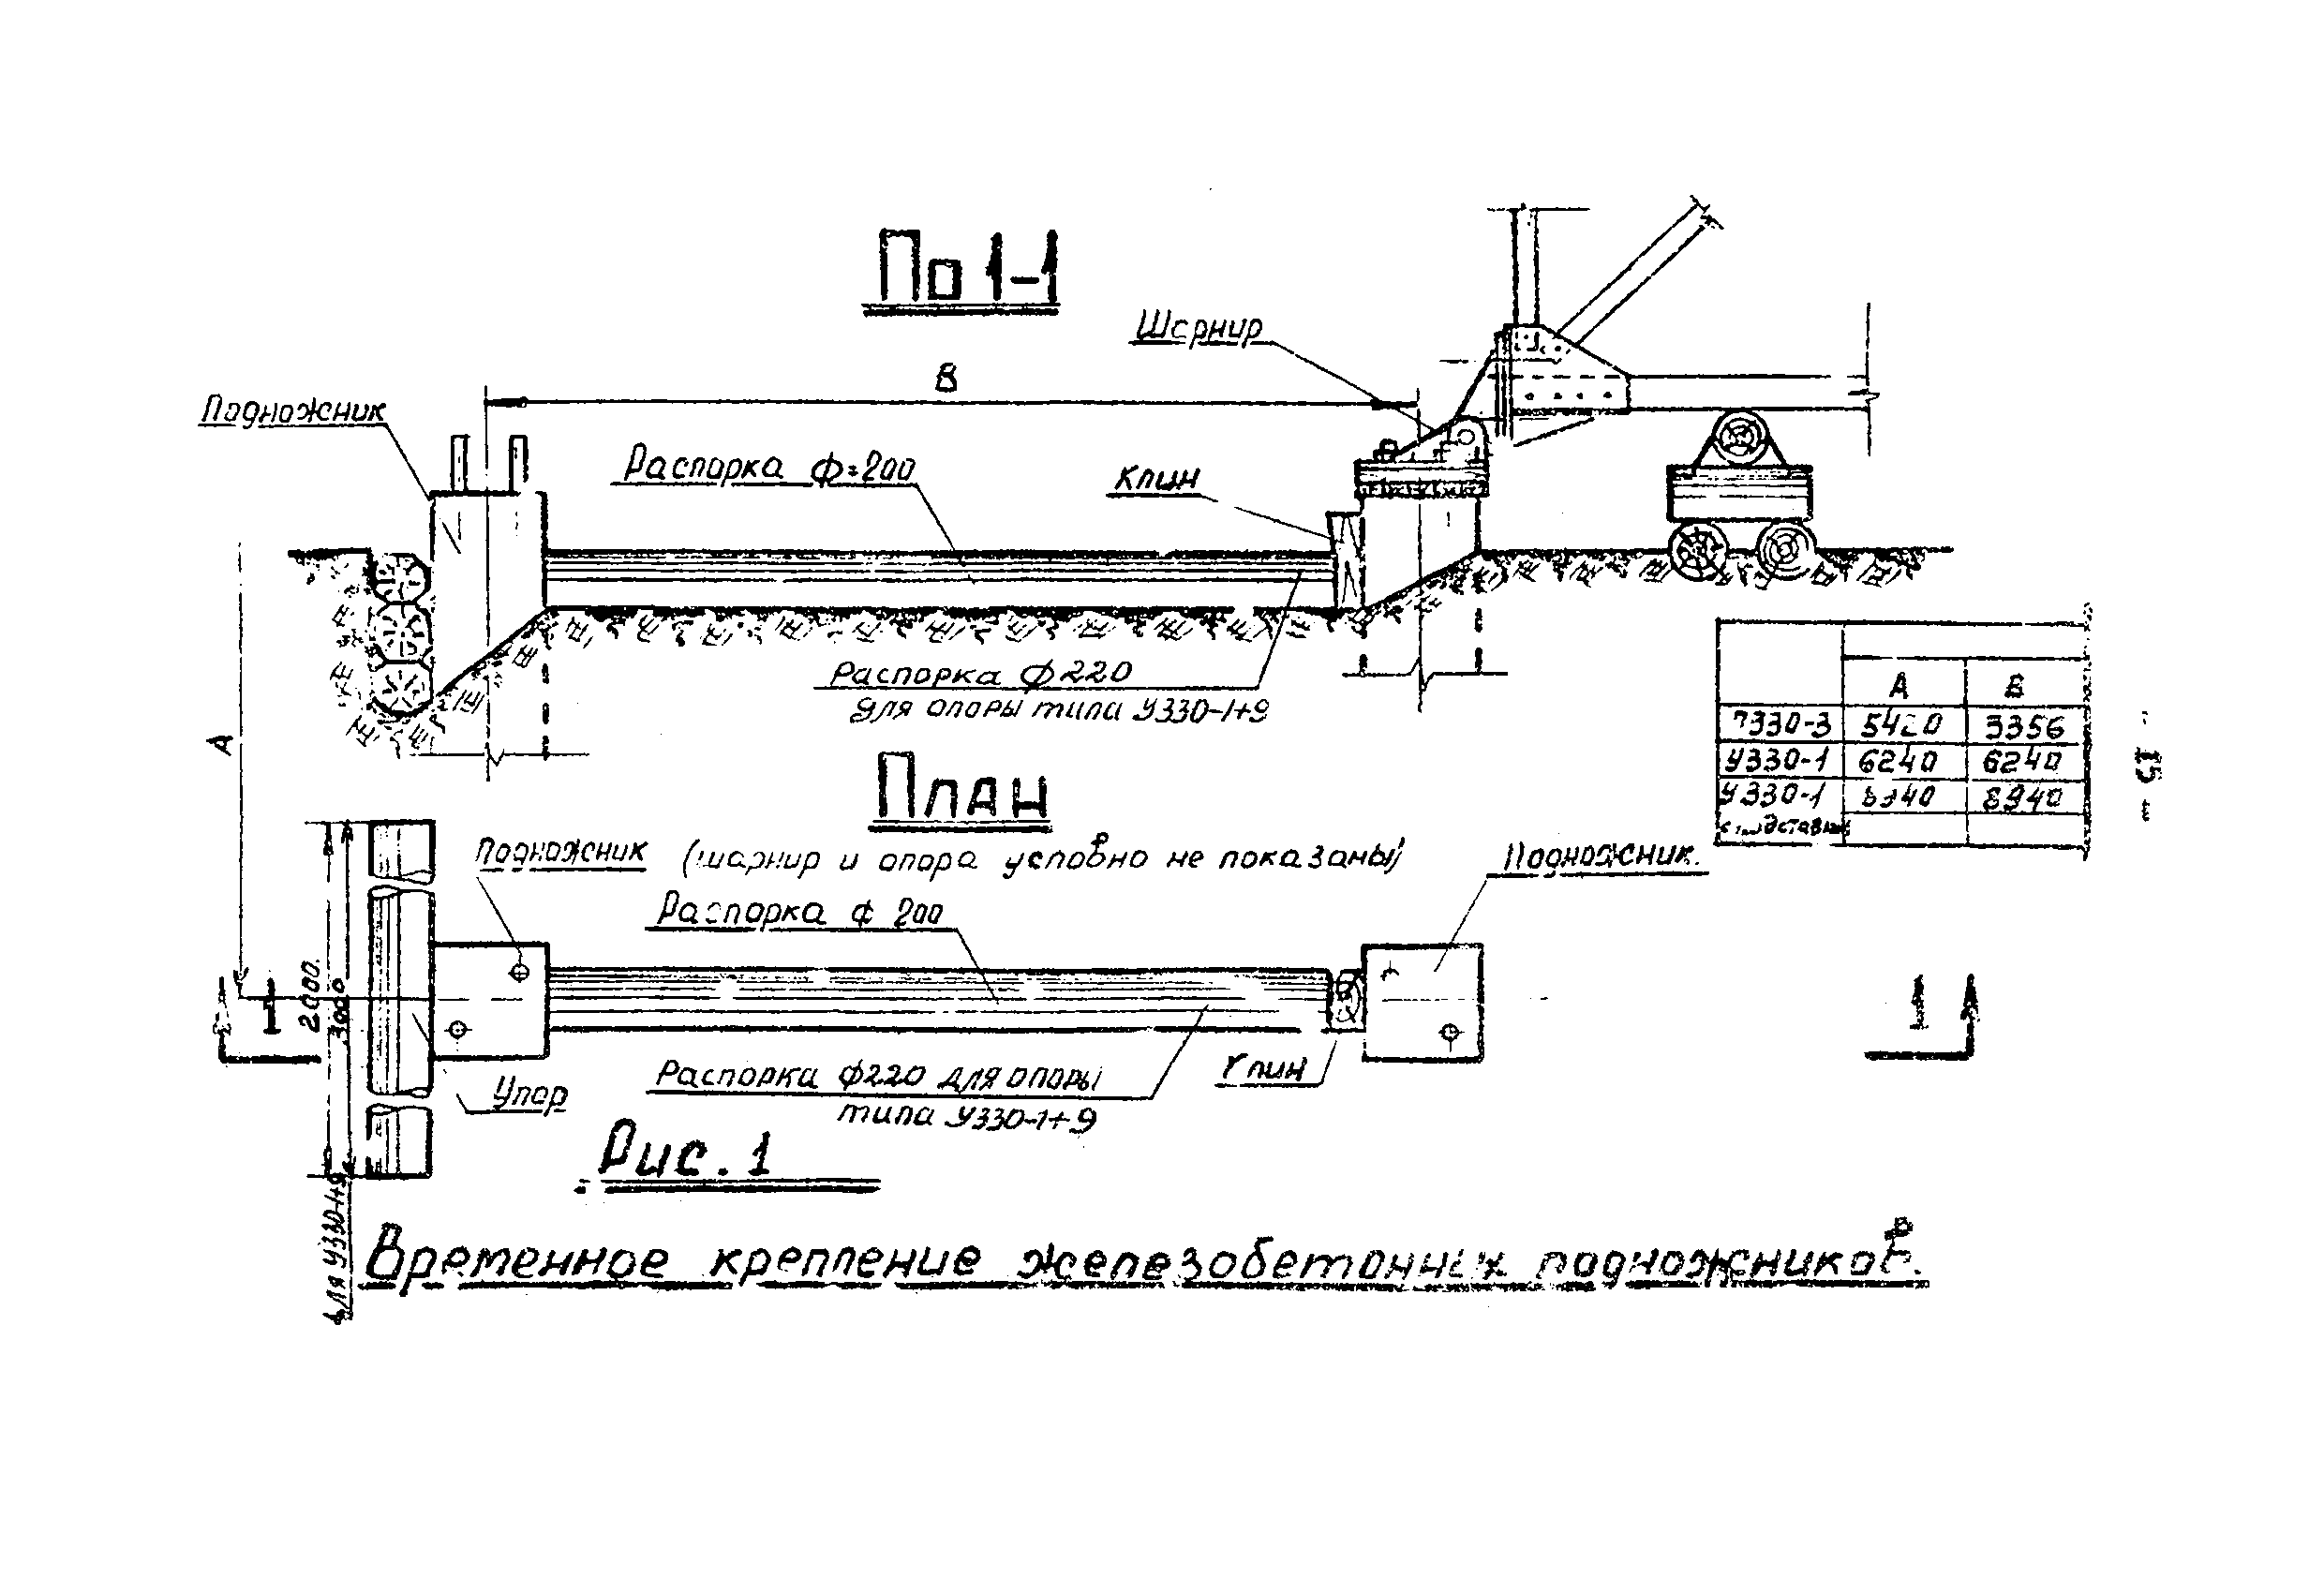 ТТК К-III-27-3